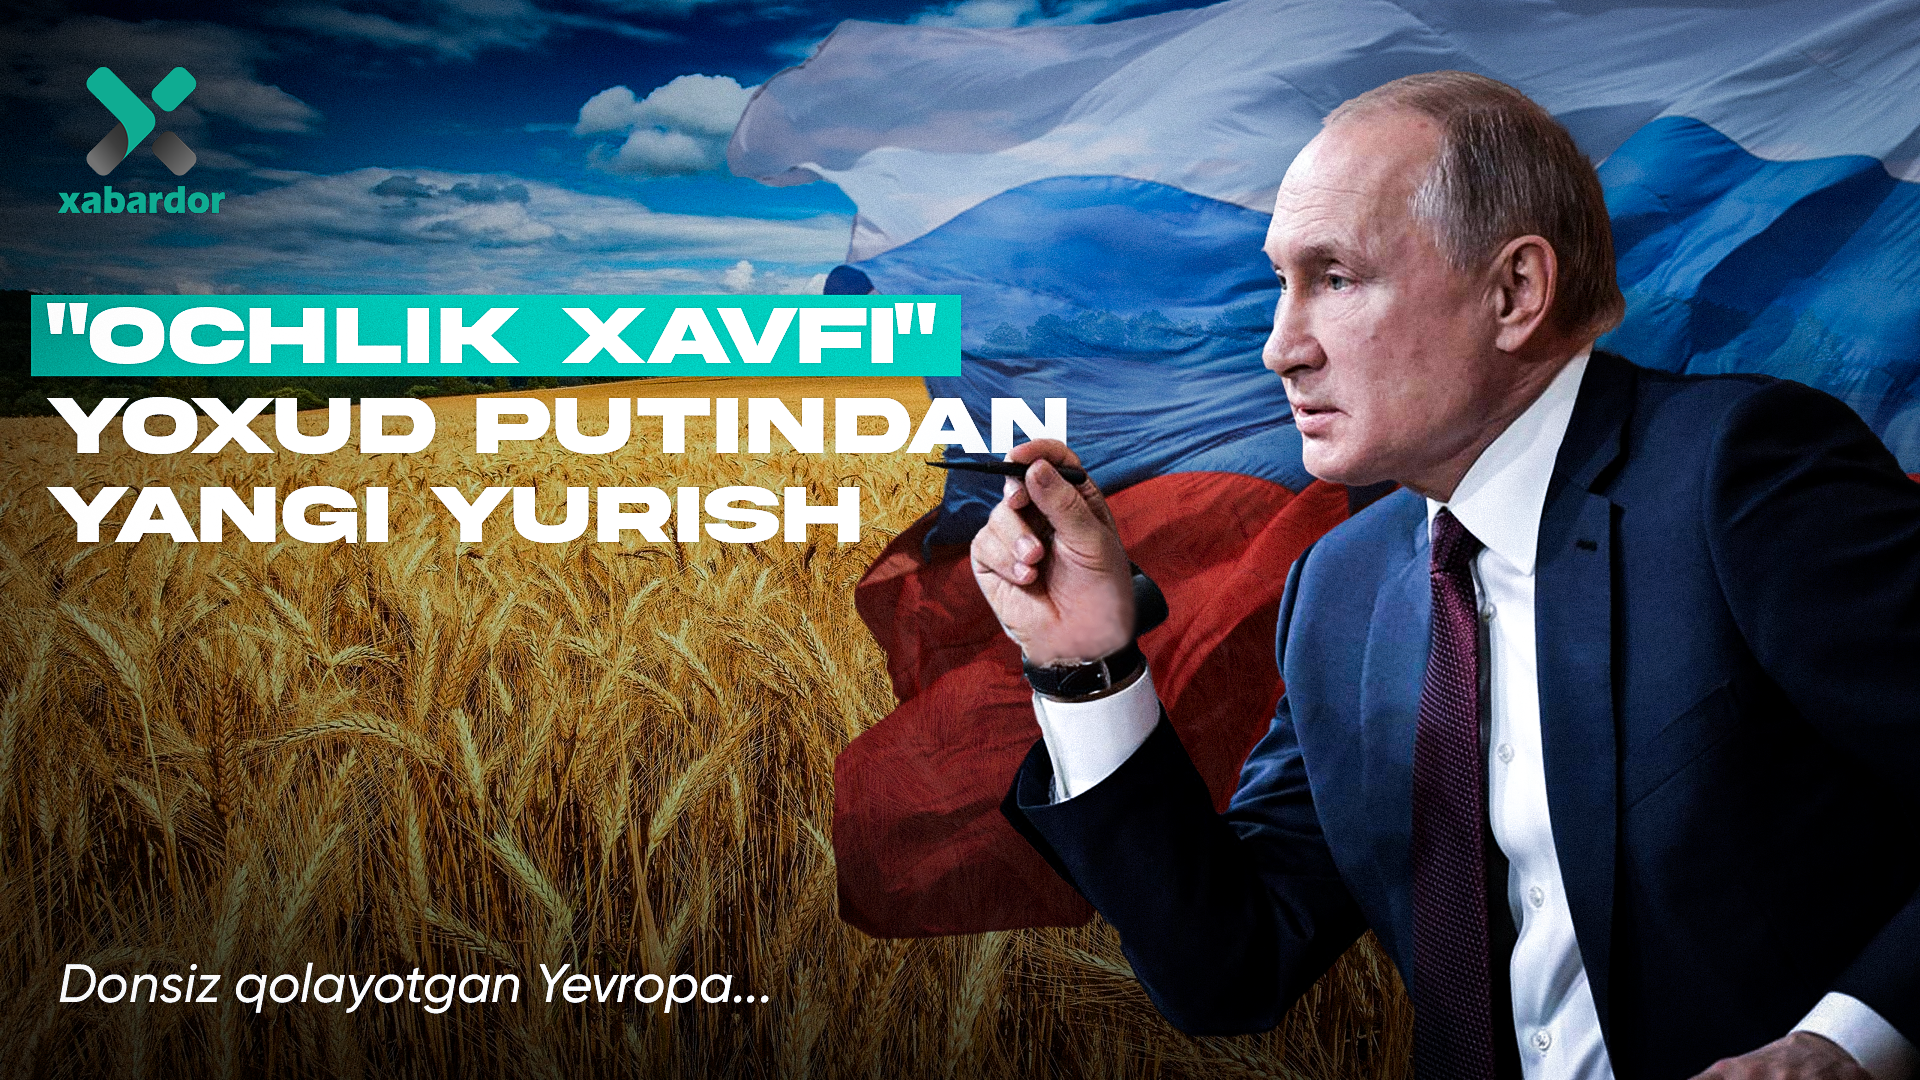 
											
											“Ochlik xavfi” yoxud Putindan yangi yurish. Donsiz qolayotgan Yevropa
											
											